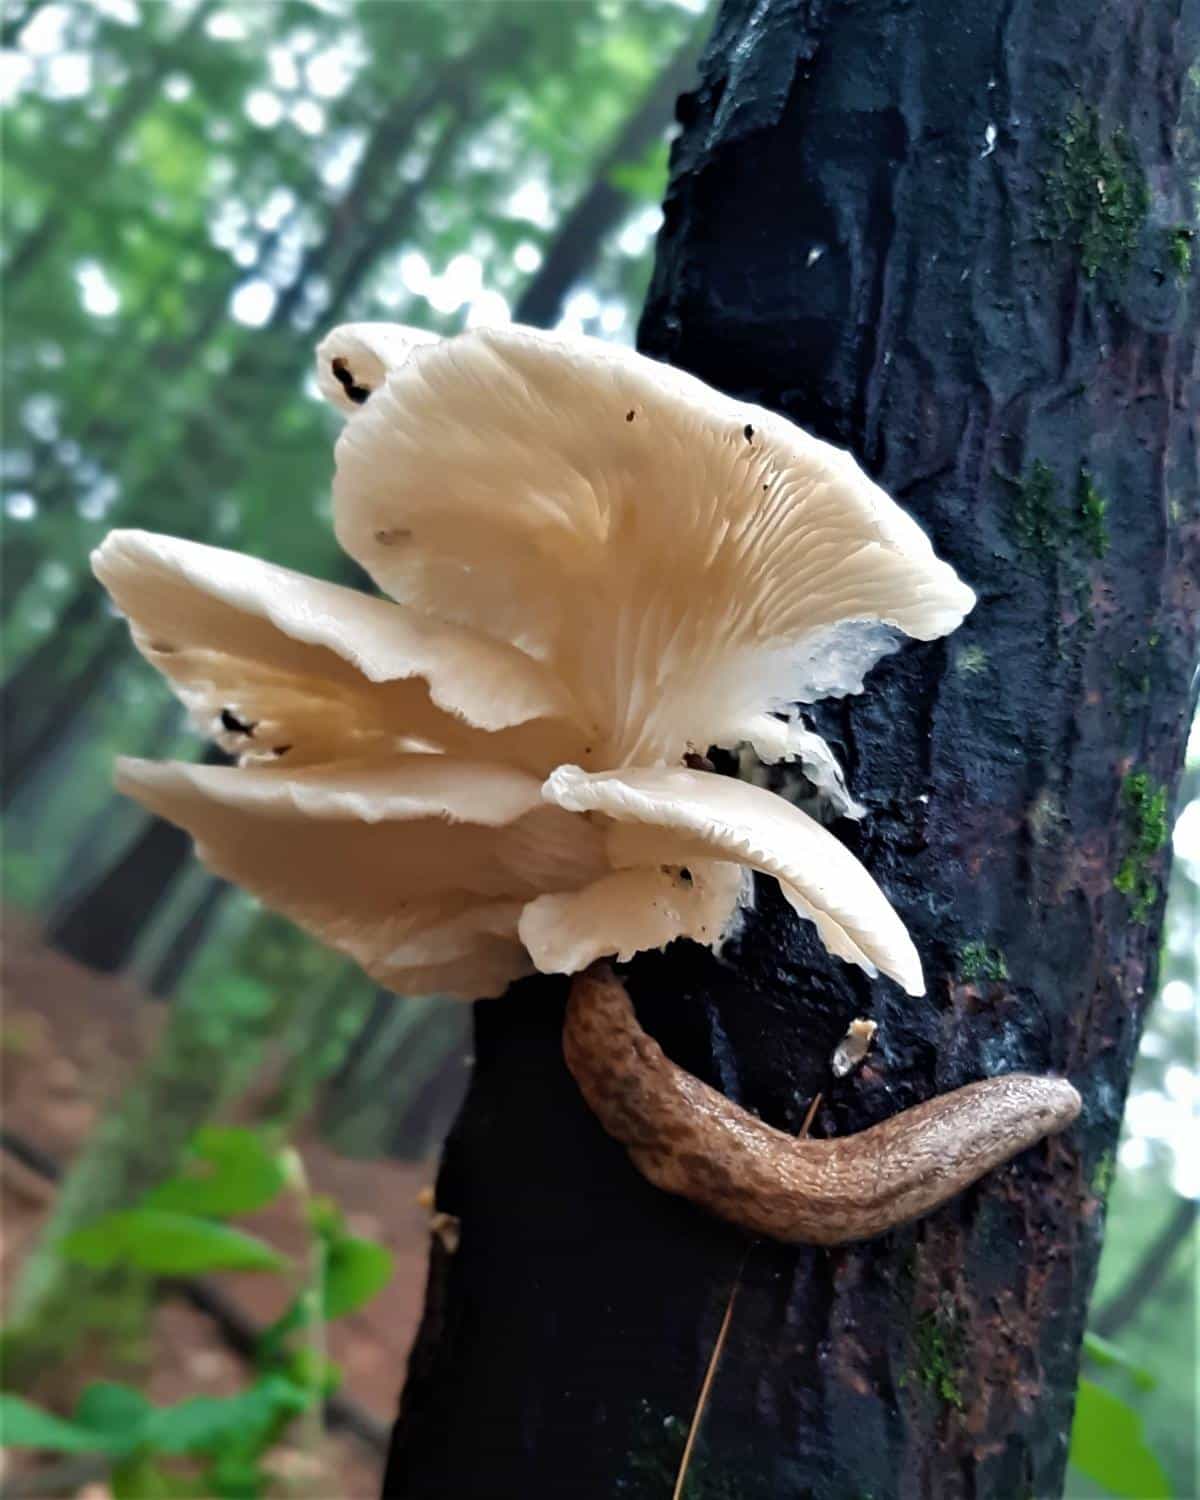 bugs and slugs on oyster mushrooms